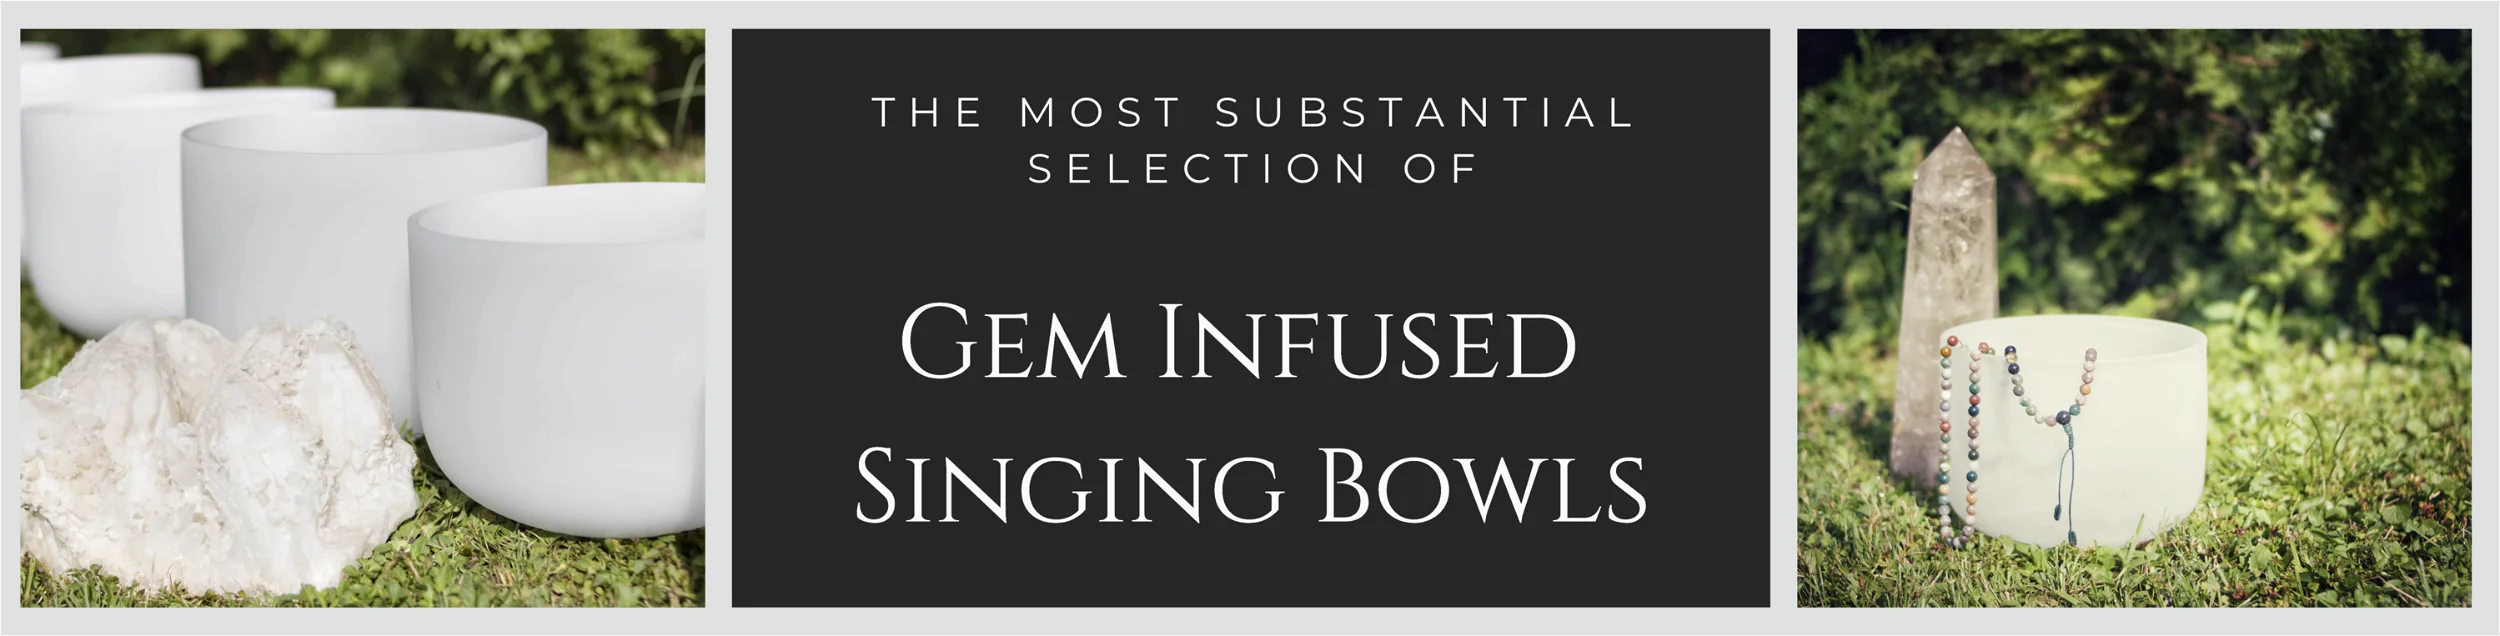 Gem Infused Singing Bowls